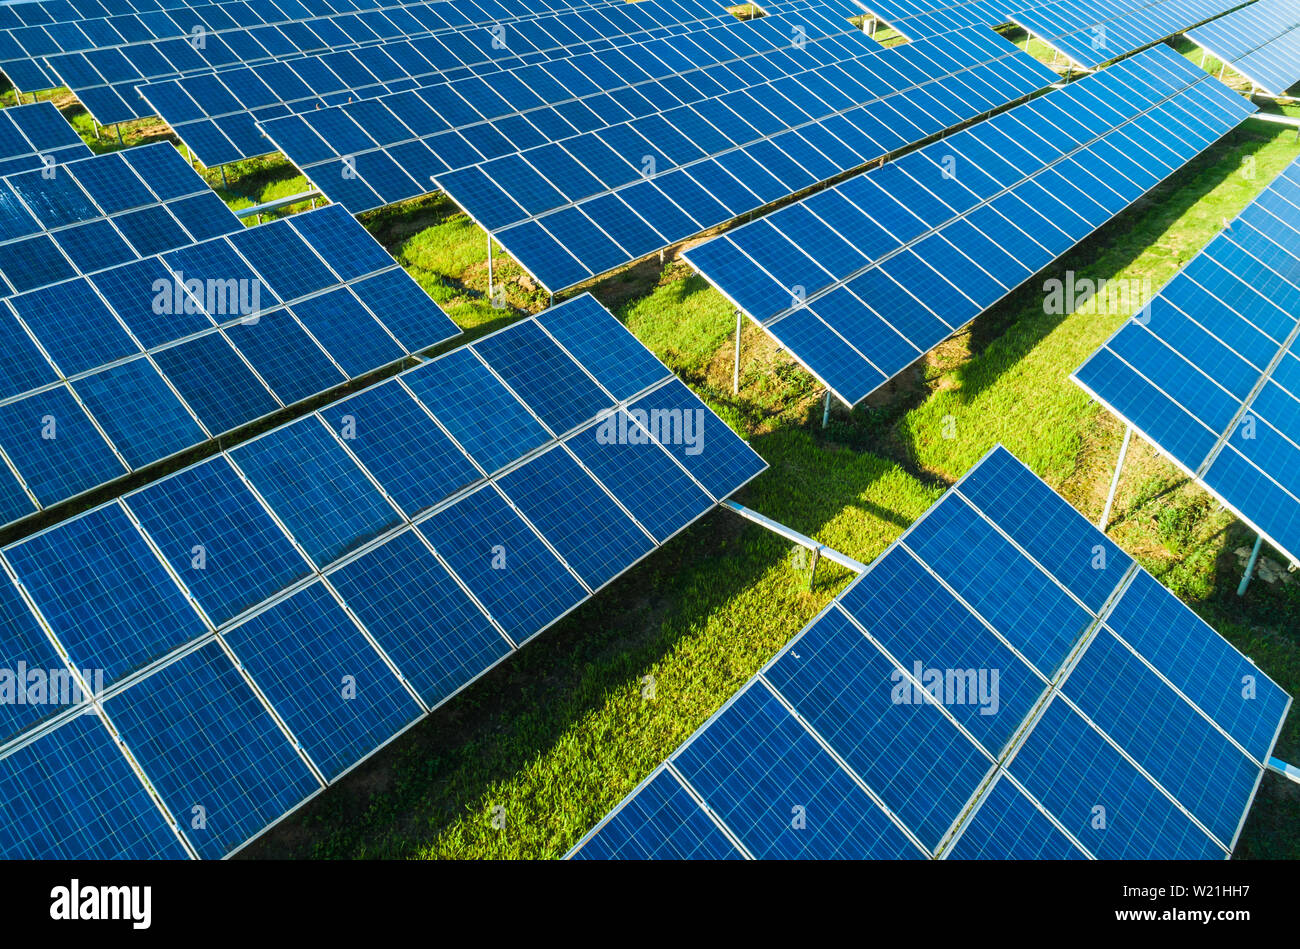 Antenne in der Nähe der Solarmodule Bauernhof mit Sonnenlicht. Erneuerbare grüne Alternative Energiekonzept. Stockfoto